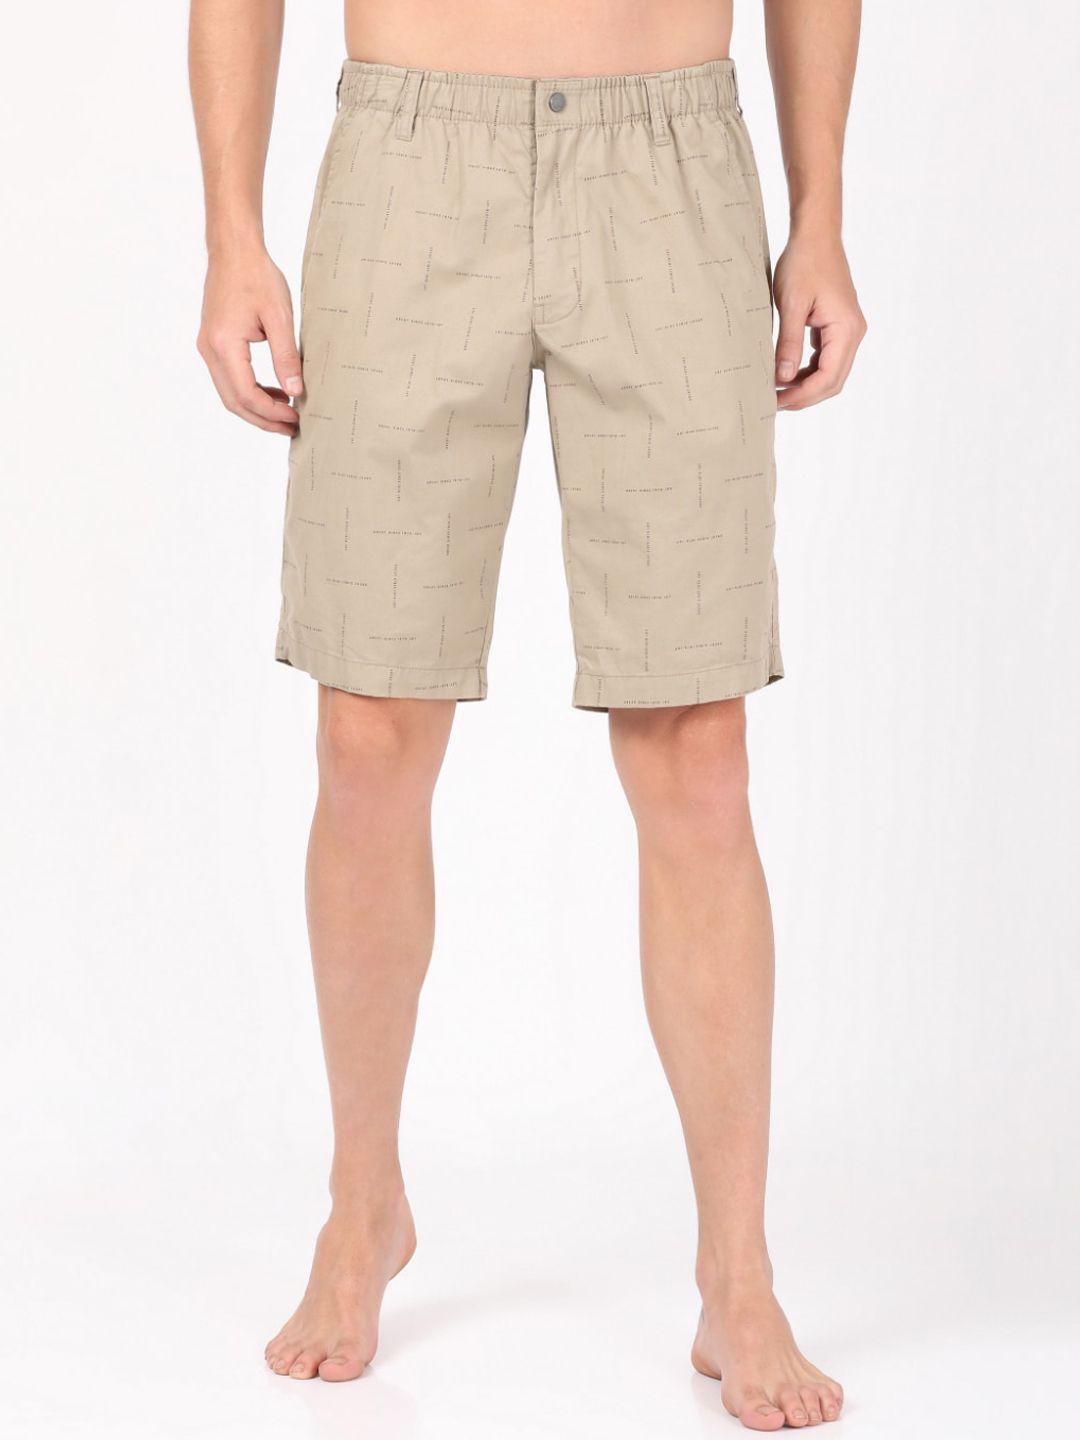 jockey-men-brown-checked-printed-shorts